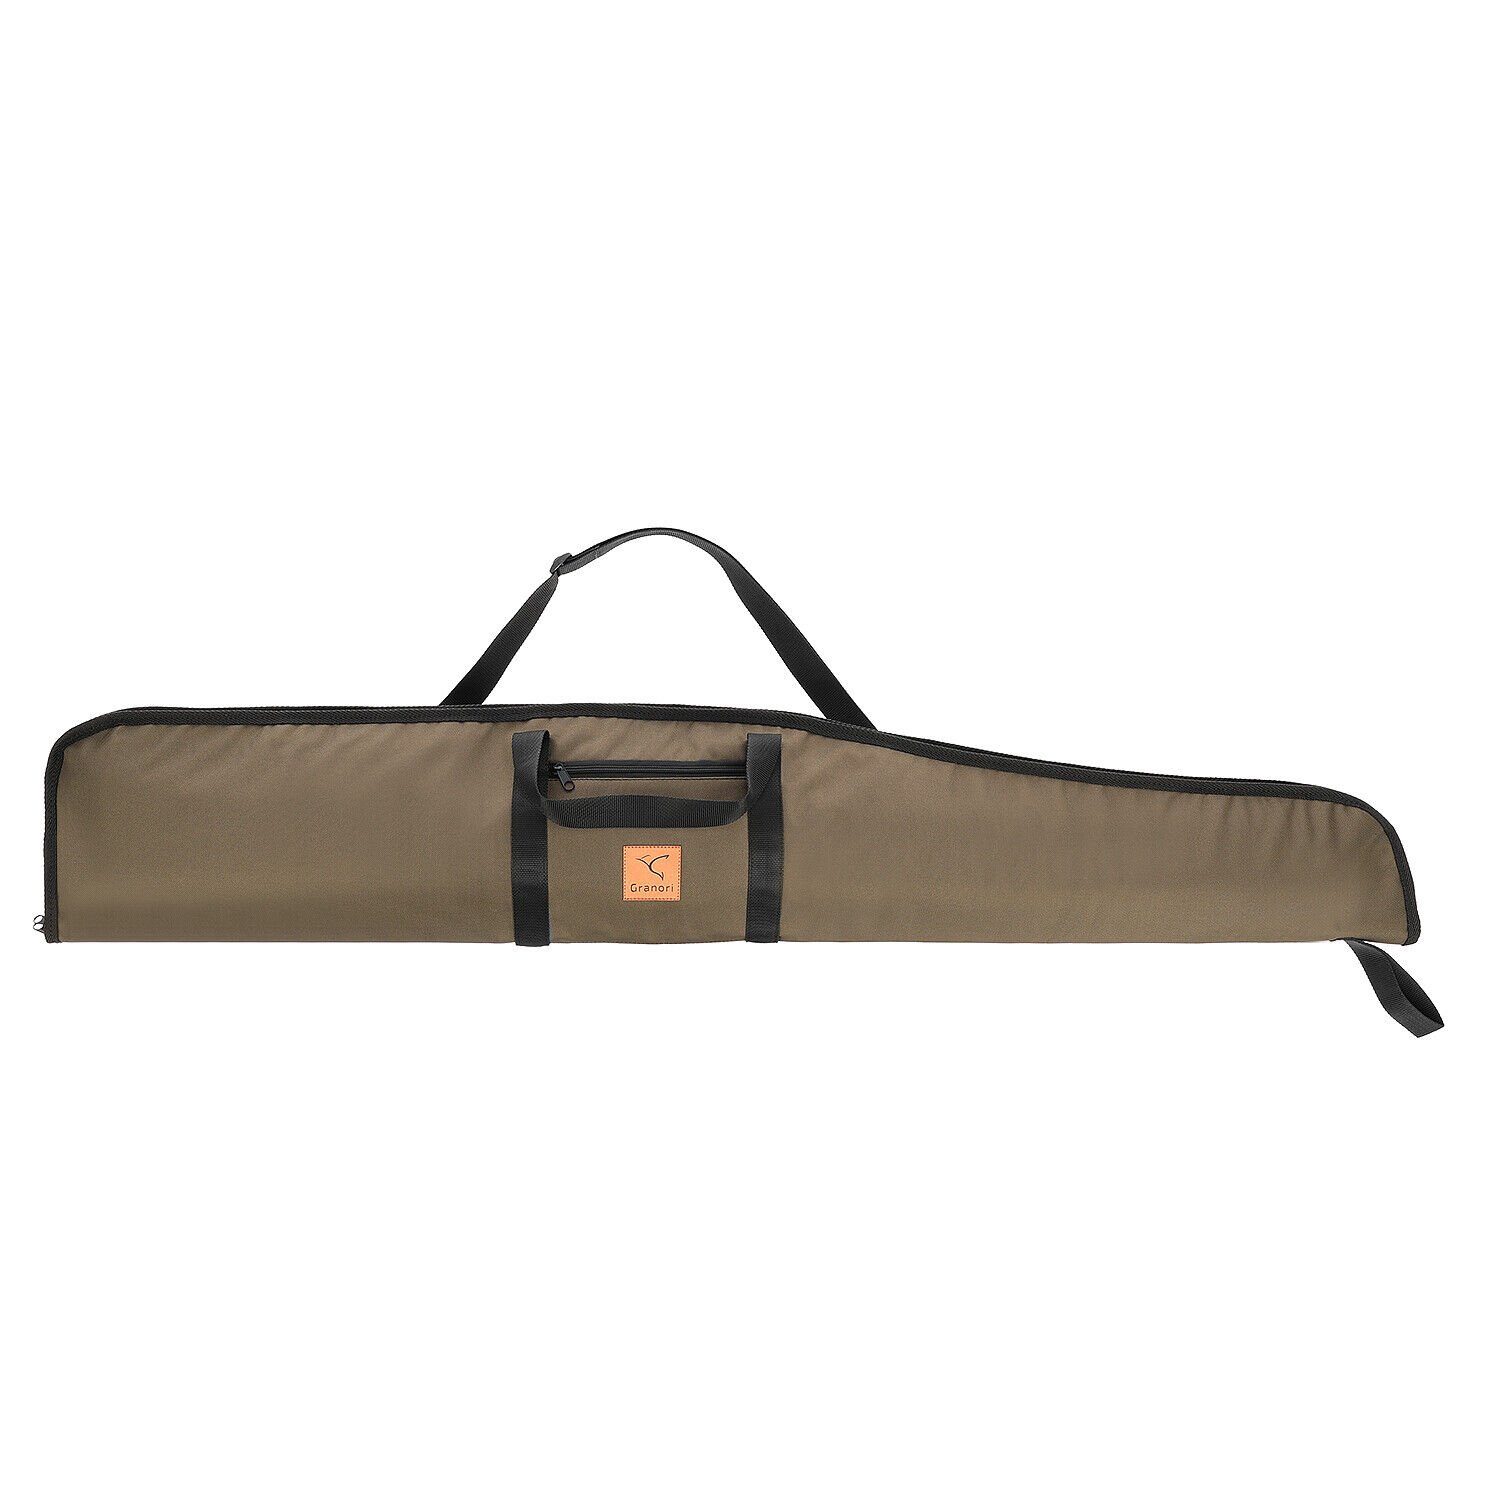 Granori Sporttasche für Luftgewehr mit Zielfernrohr, Waffentasche gepolstert 135 cm Länge, abschließbar, mit Außentasche und verstellbarem Tragegurt, wetterfest Oliv